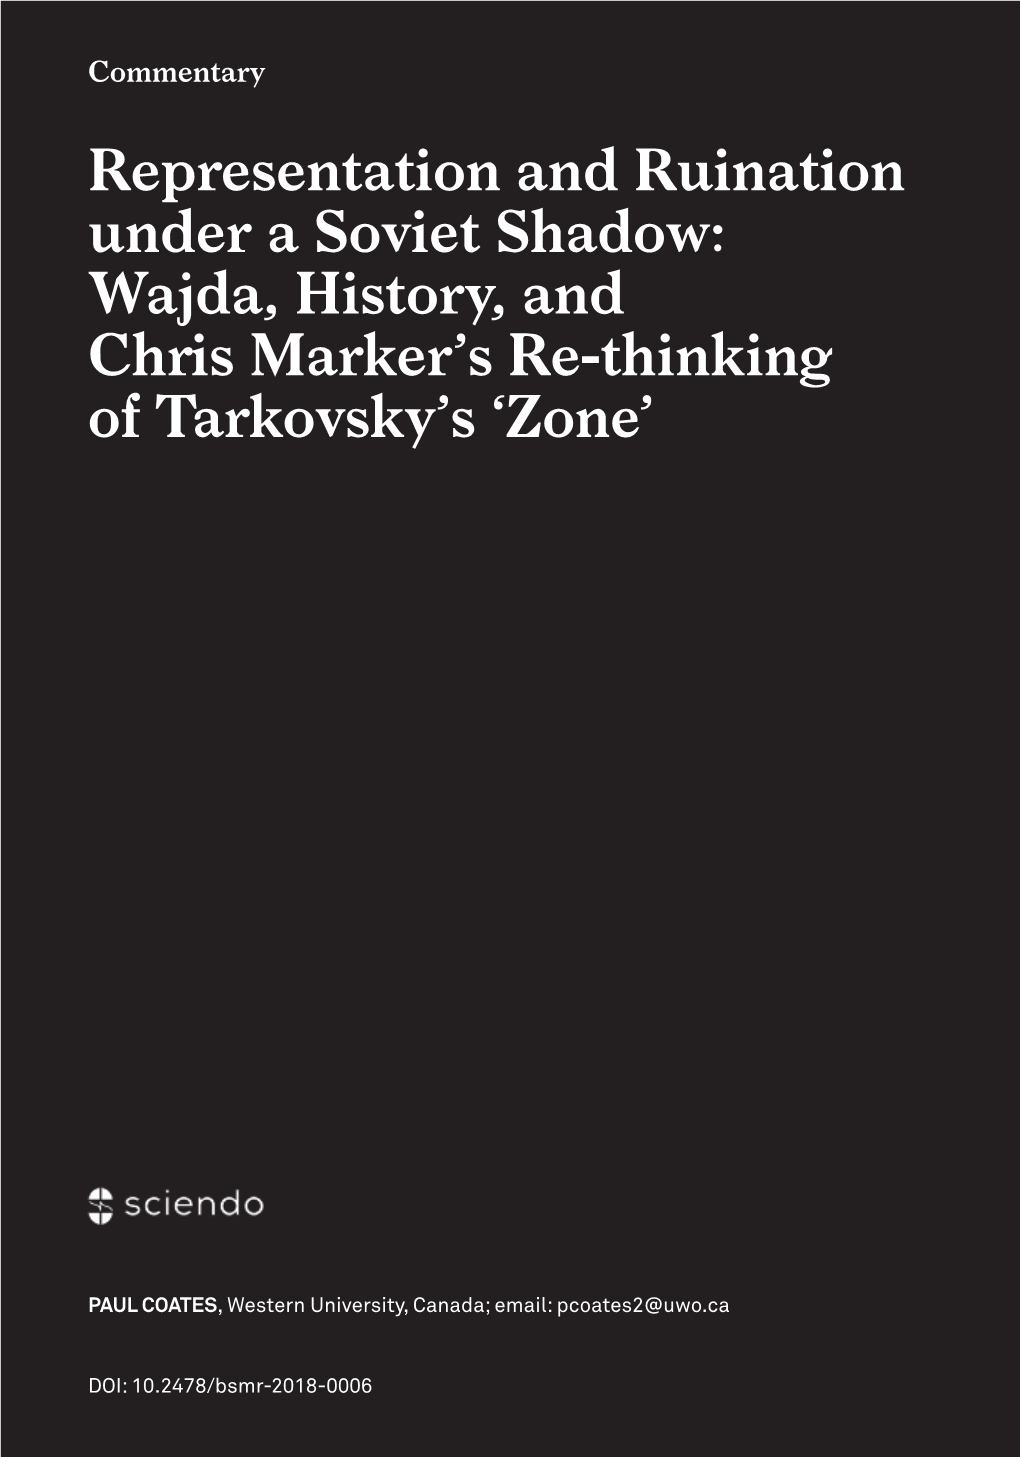 Wajda, History, and Chris Marker's Re-Thinking of Tarkovsky's